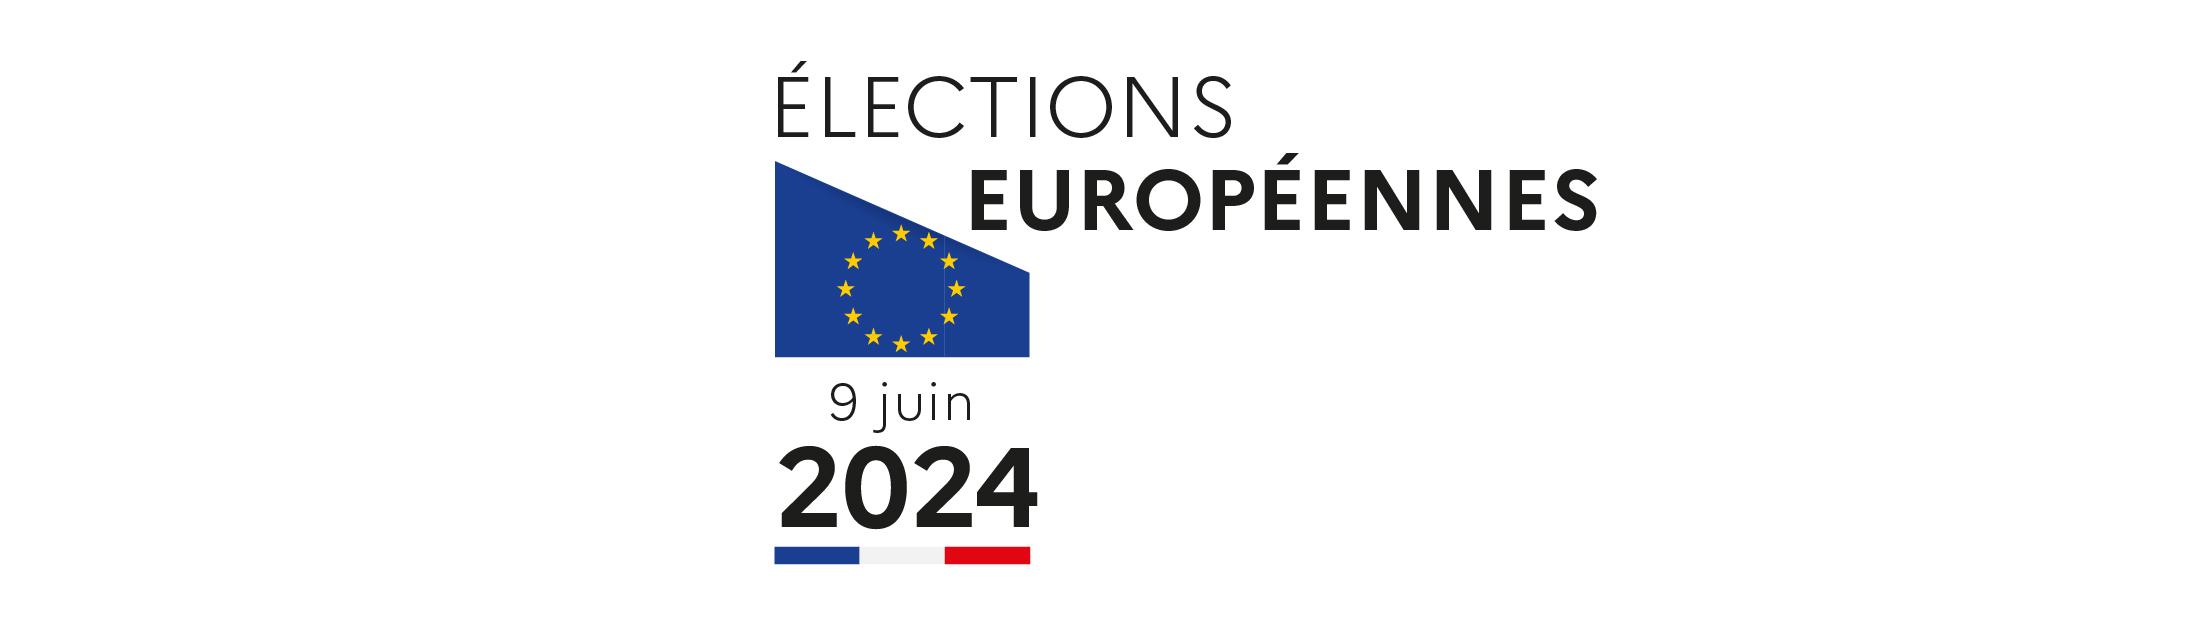 Élections européennes 2024 : dimanche 9 juin allons voter !